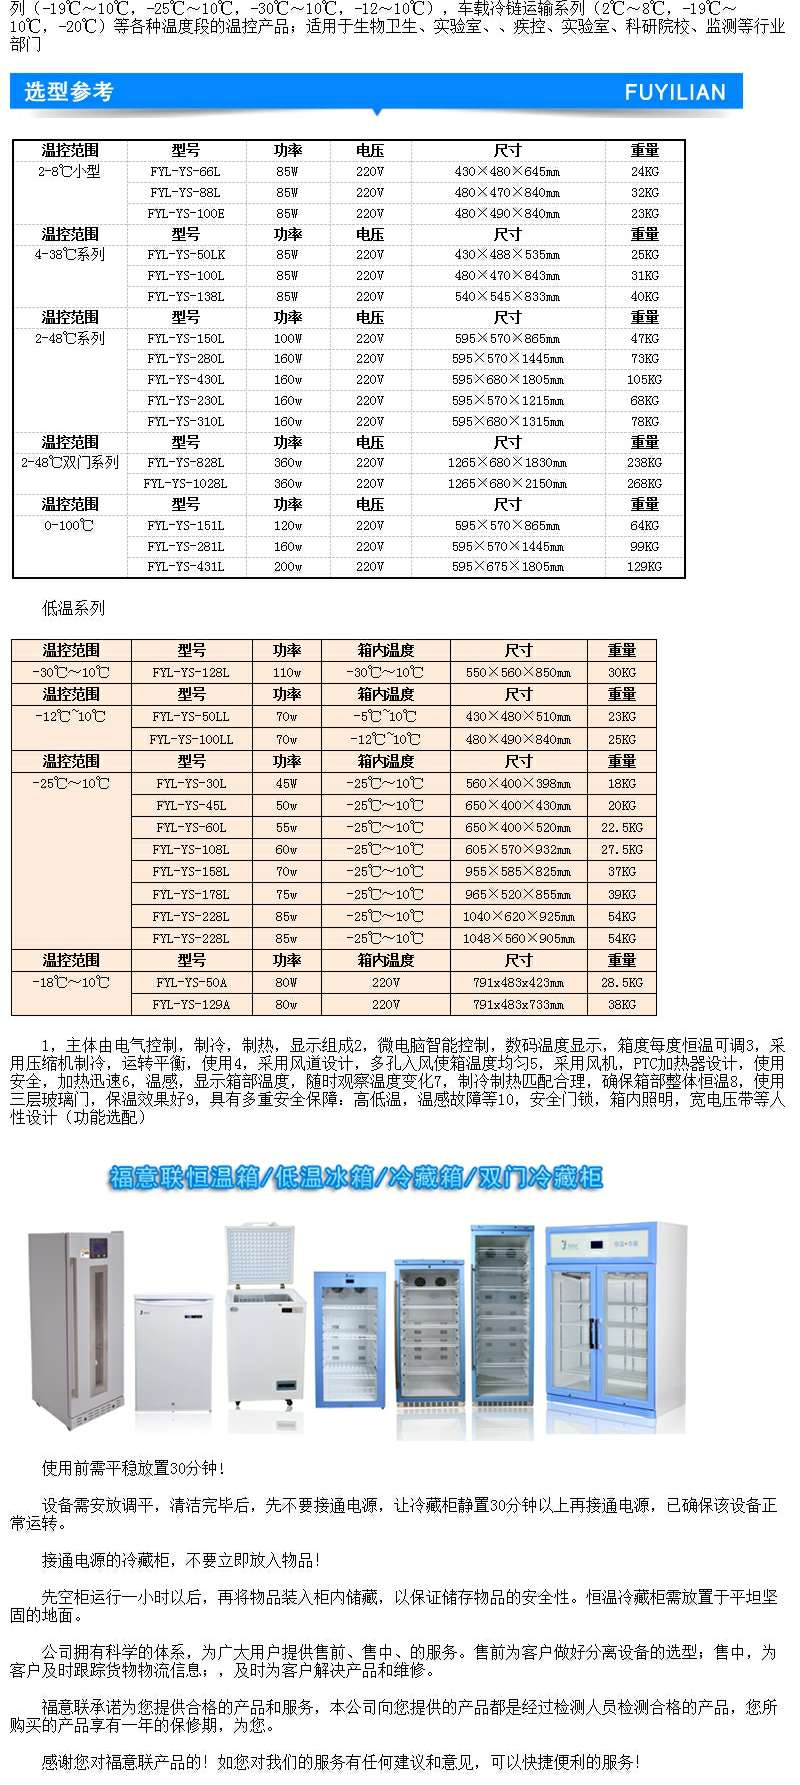 福意联冰箱（2-8℃）FYL-YS-430L（容量430L）恒温冷藏箱